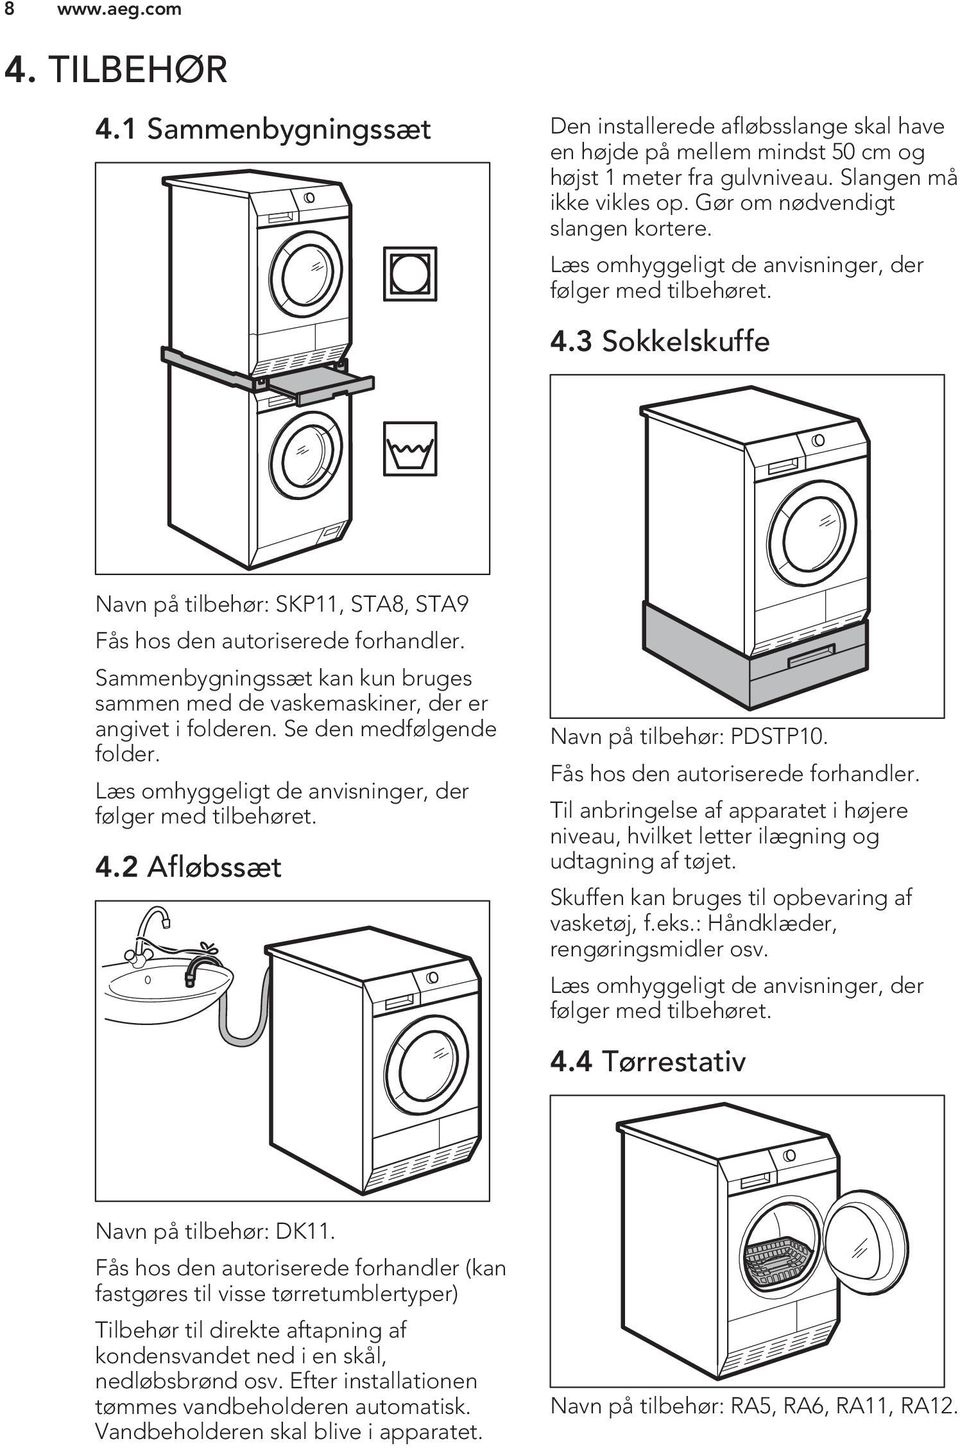 Sammenbygningssæt kan kun bruges sammen med de vaskemaskiner, der er angivet i folderen. Se den medfølgende folder. Læs omhyggeligt de anvisninger, der følger med tilbehøret. 4.